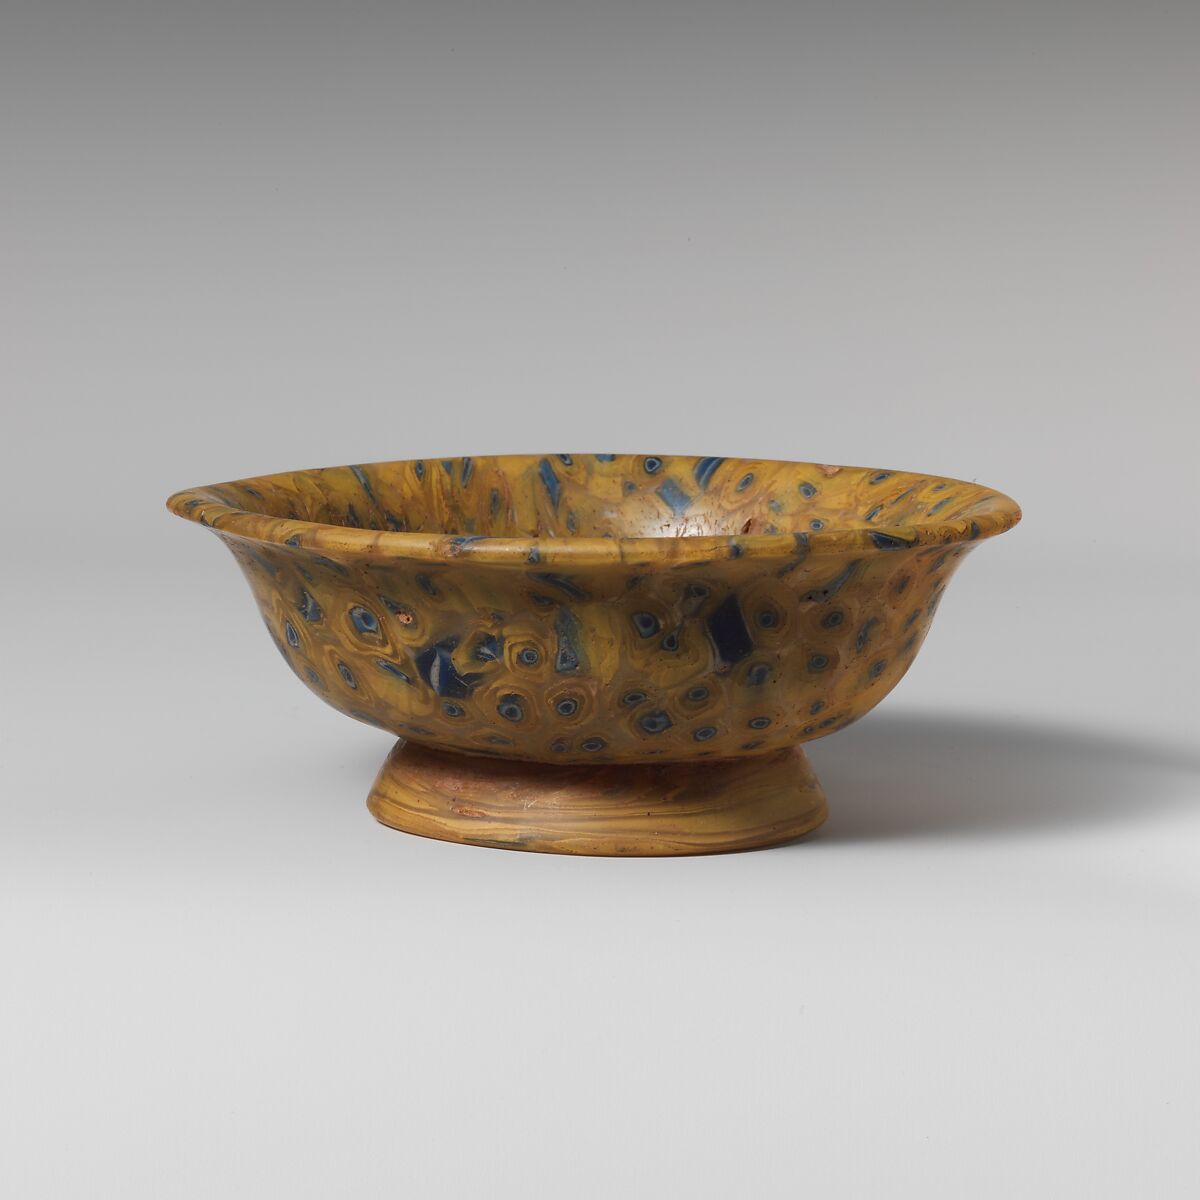 Glass mosaic bowl, Glass, Greek or Roman 